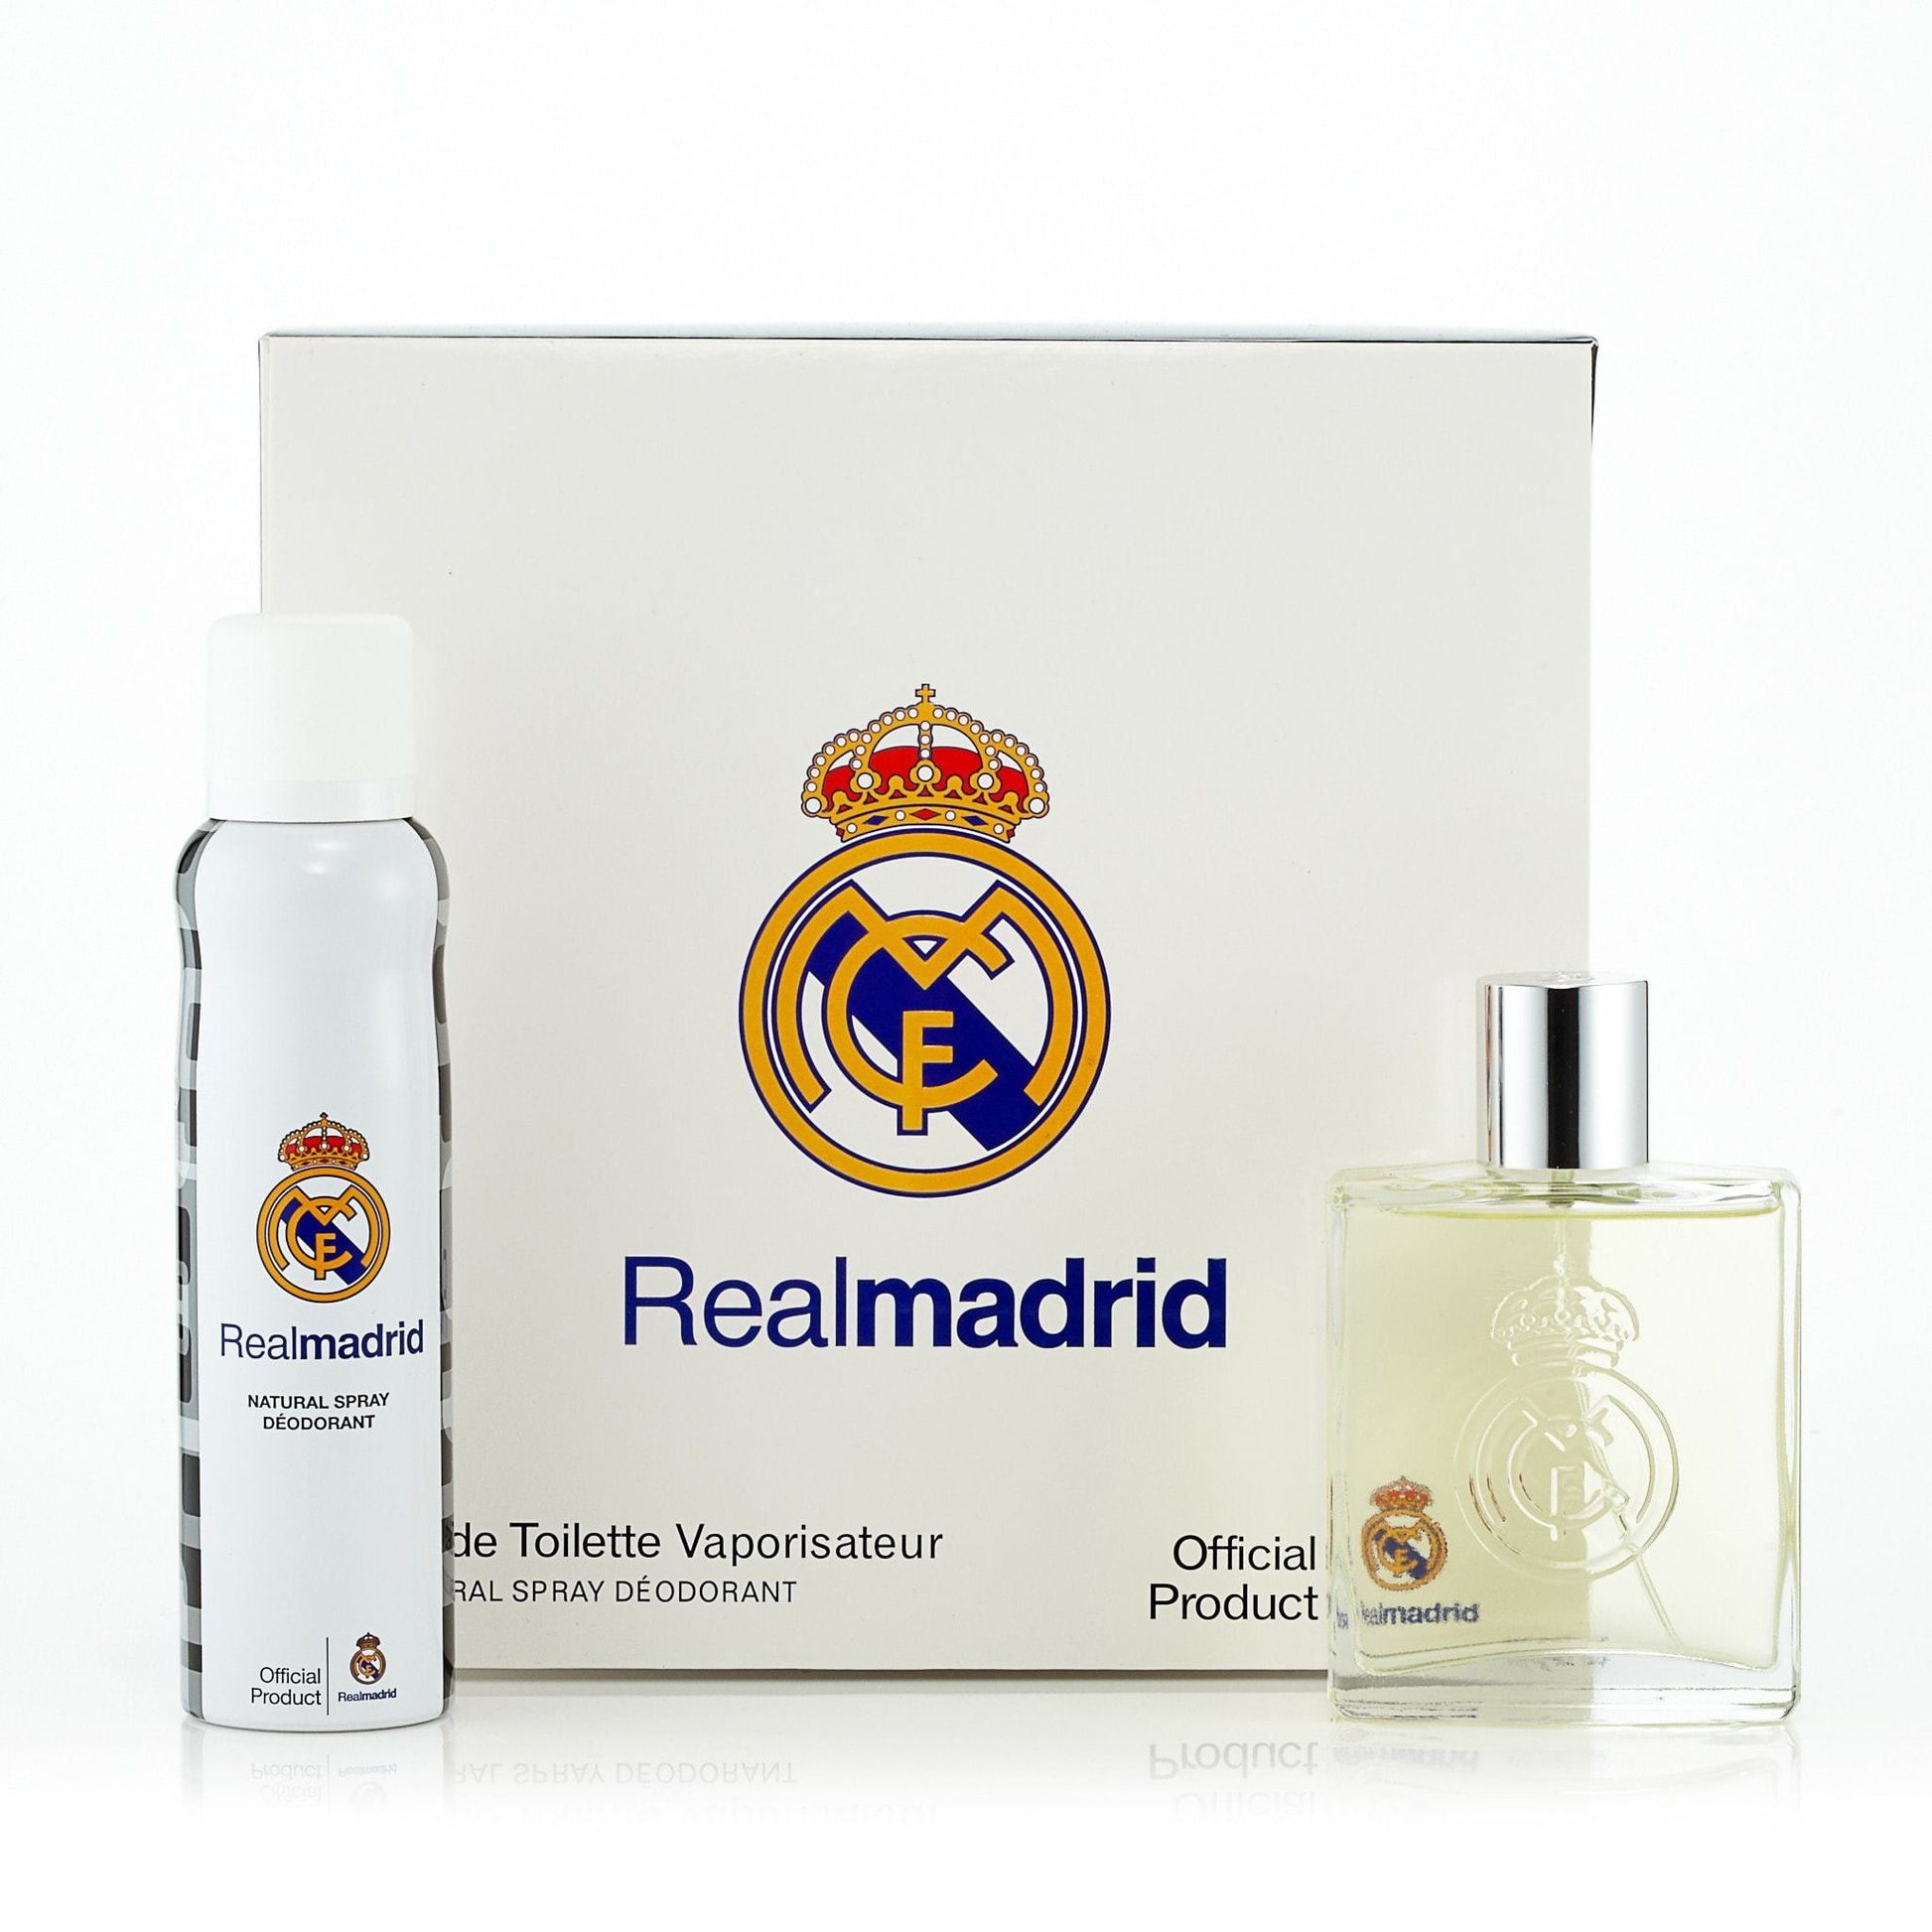 https://www.fragranceoutlet.com/cdn/shop/products/Real-Madrid-Real-Madrid-Gift-Set-Men-Gift-Set--5.1-Best-Price-Fragrance-Perfume-FragranceOutlet.com-DETAILS.jpg?v=1626882119&width=1946